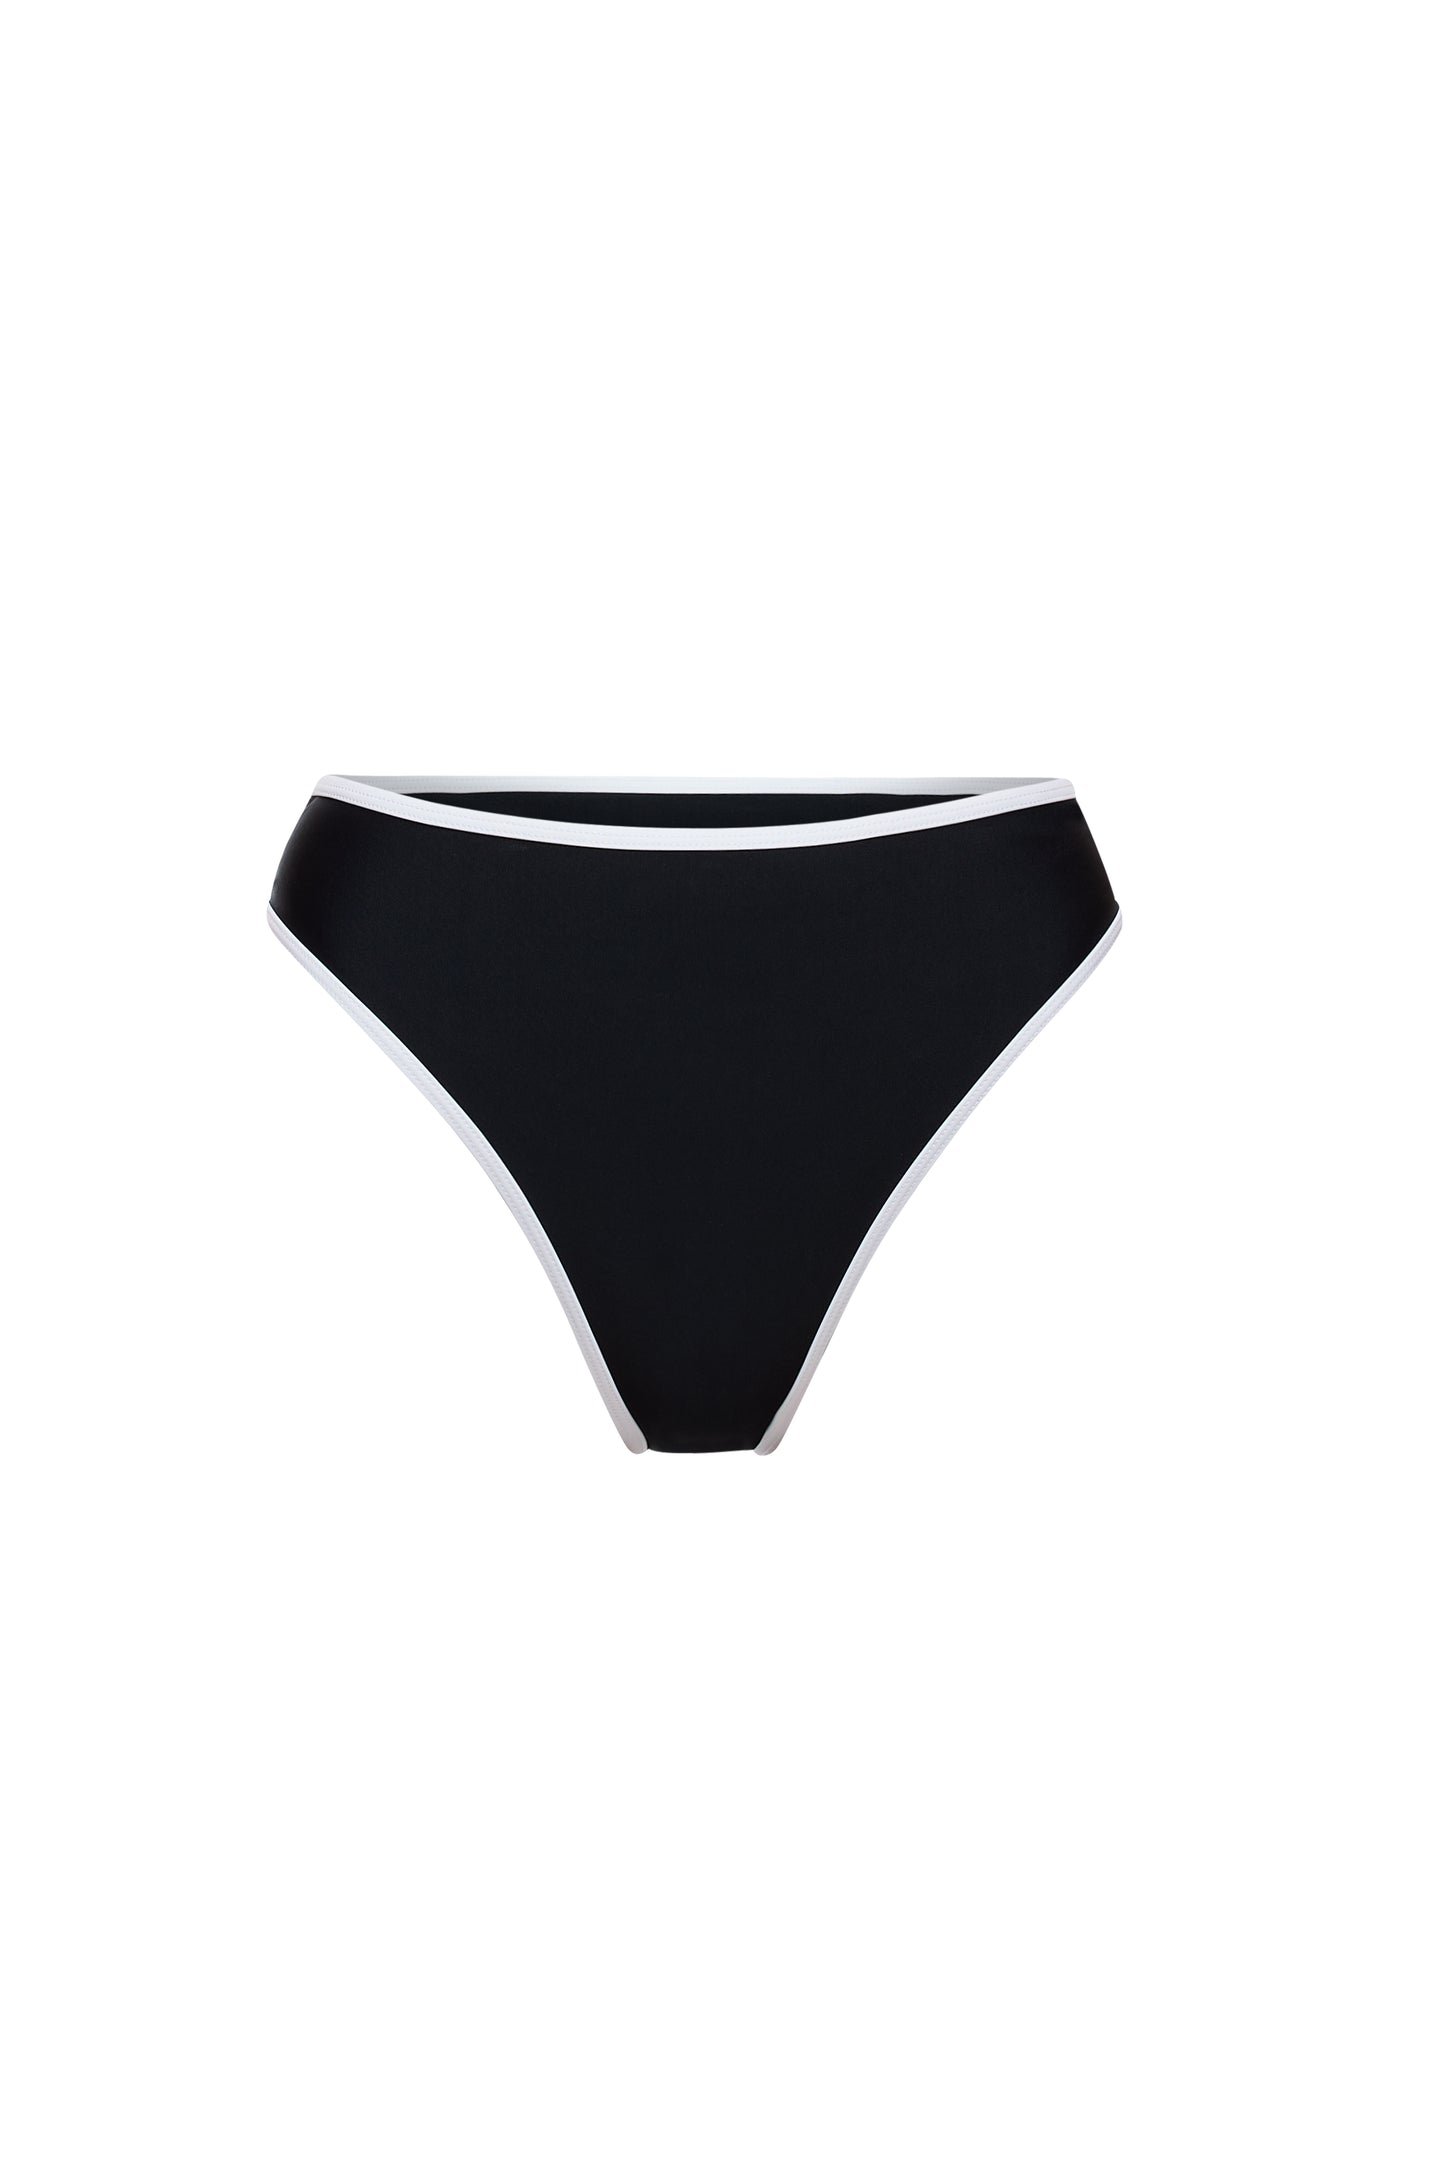 Sydney Bikini Bottom - Black & White